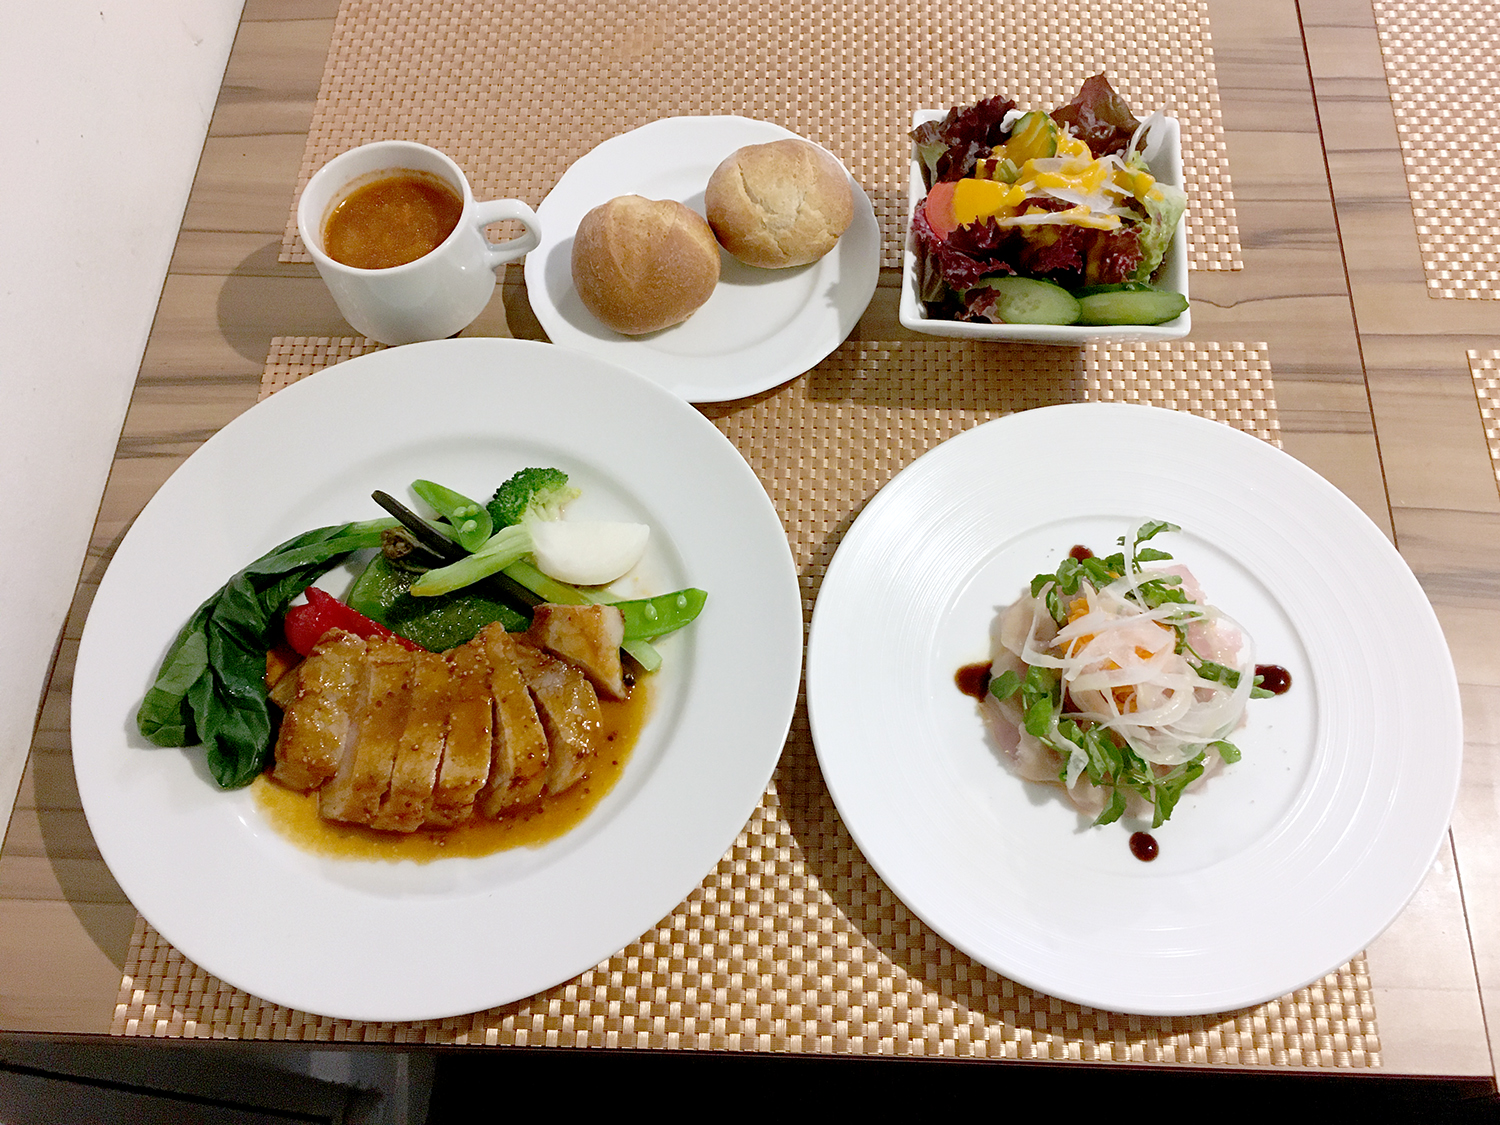 前菜とメインを選べるカジュアルセット1500円。サラダ、スープ、ミルクパンがつく。コーヒーまたは紅茶セットはプラス100円。